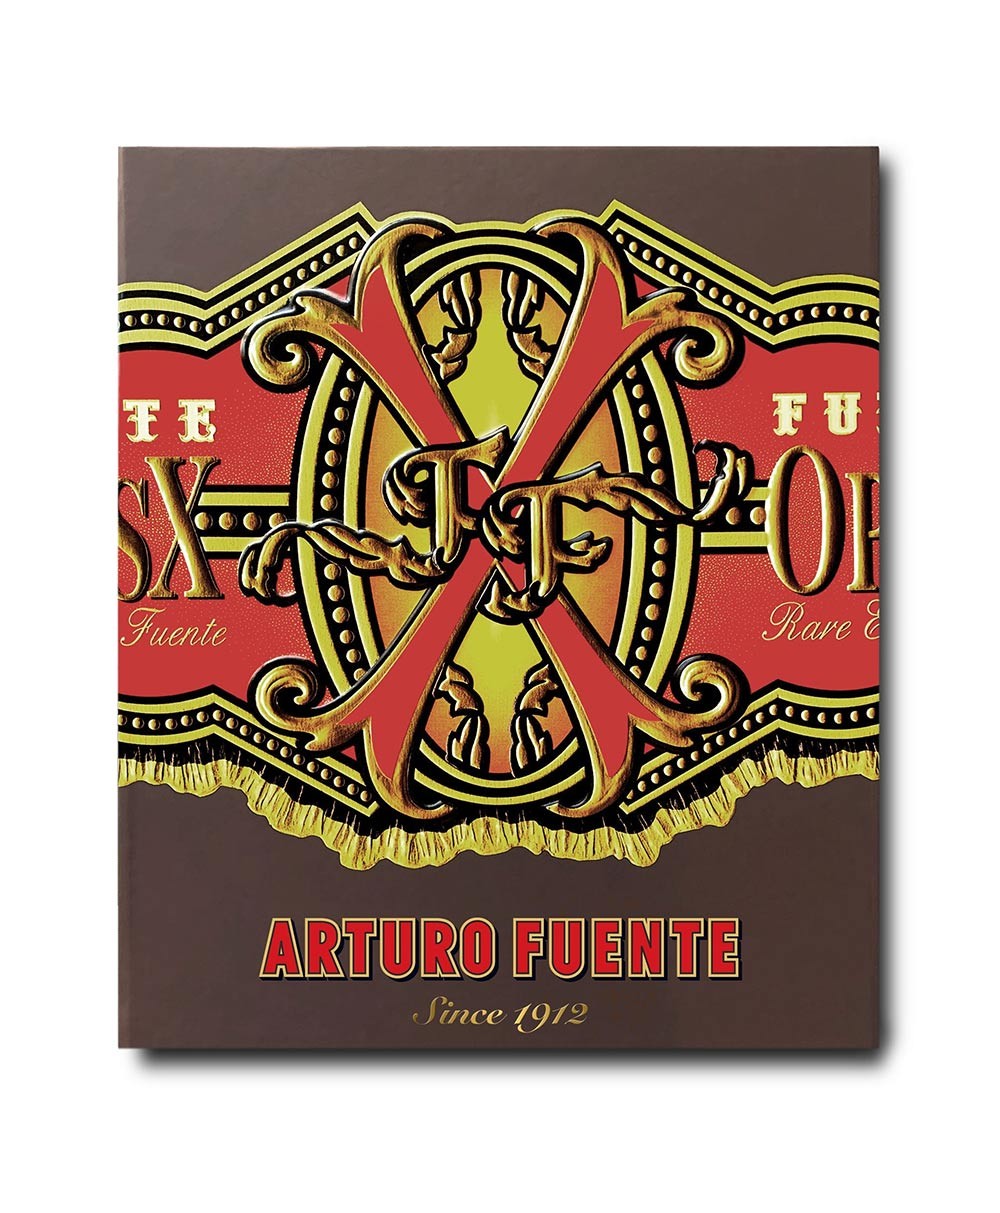 Produktbild der Ultimate Collection von Assouline, Bildband „Arturo Fuente: Since 1912“ im RAUM concept store 